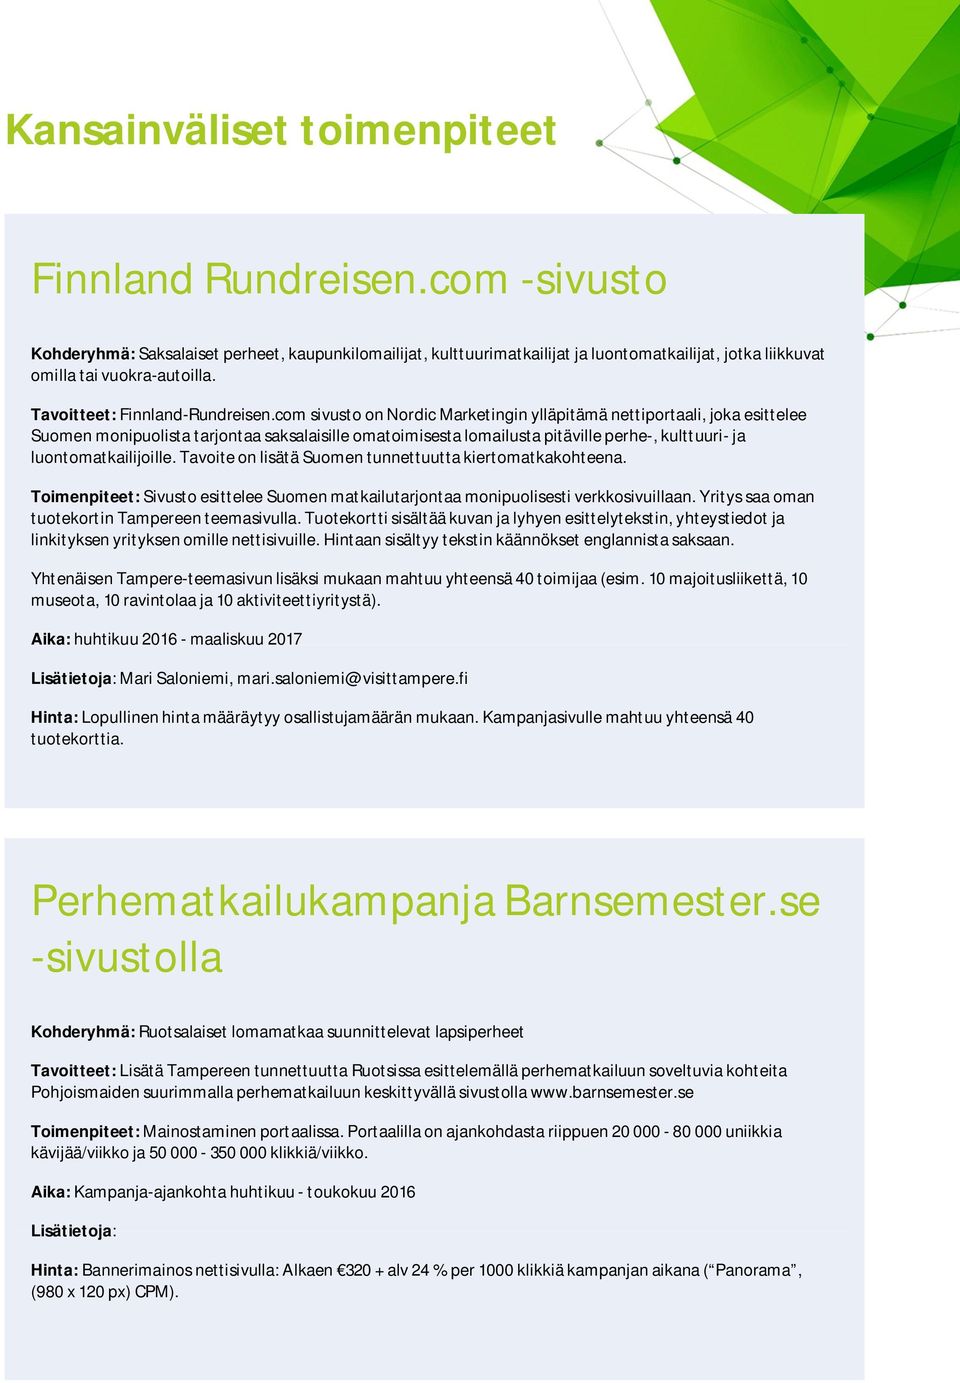 com sivusto on Nordic Marketingin ylläpitämä nettiportaali, joka esittelee Suomen monipuolista tarjontaa saksalaisille omatoimisesta lomailusta pitäville perhe-, kulttuuri- ja luontomatkailijoille.